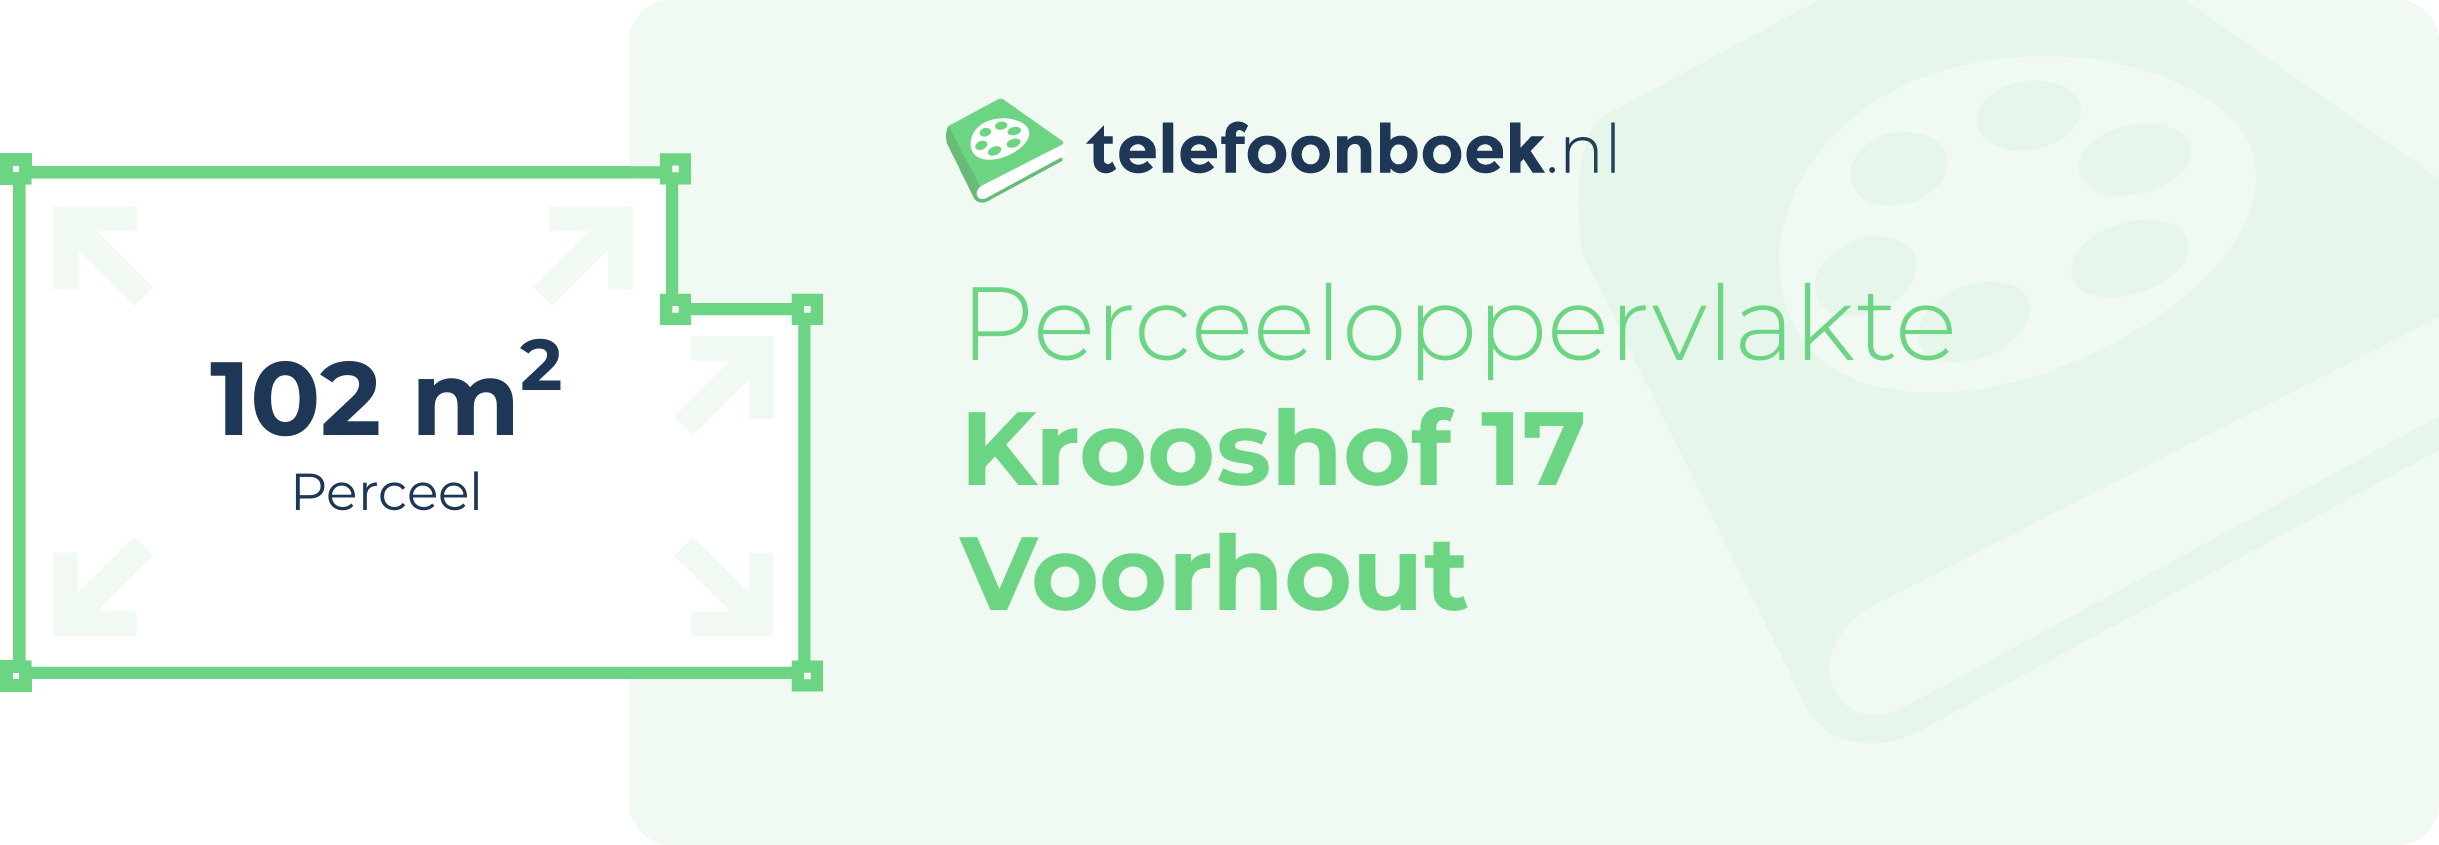 Perceeloppervlakte Krooshof 17 Voorhout